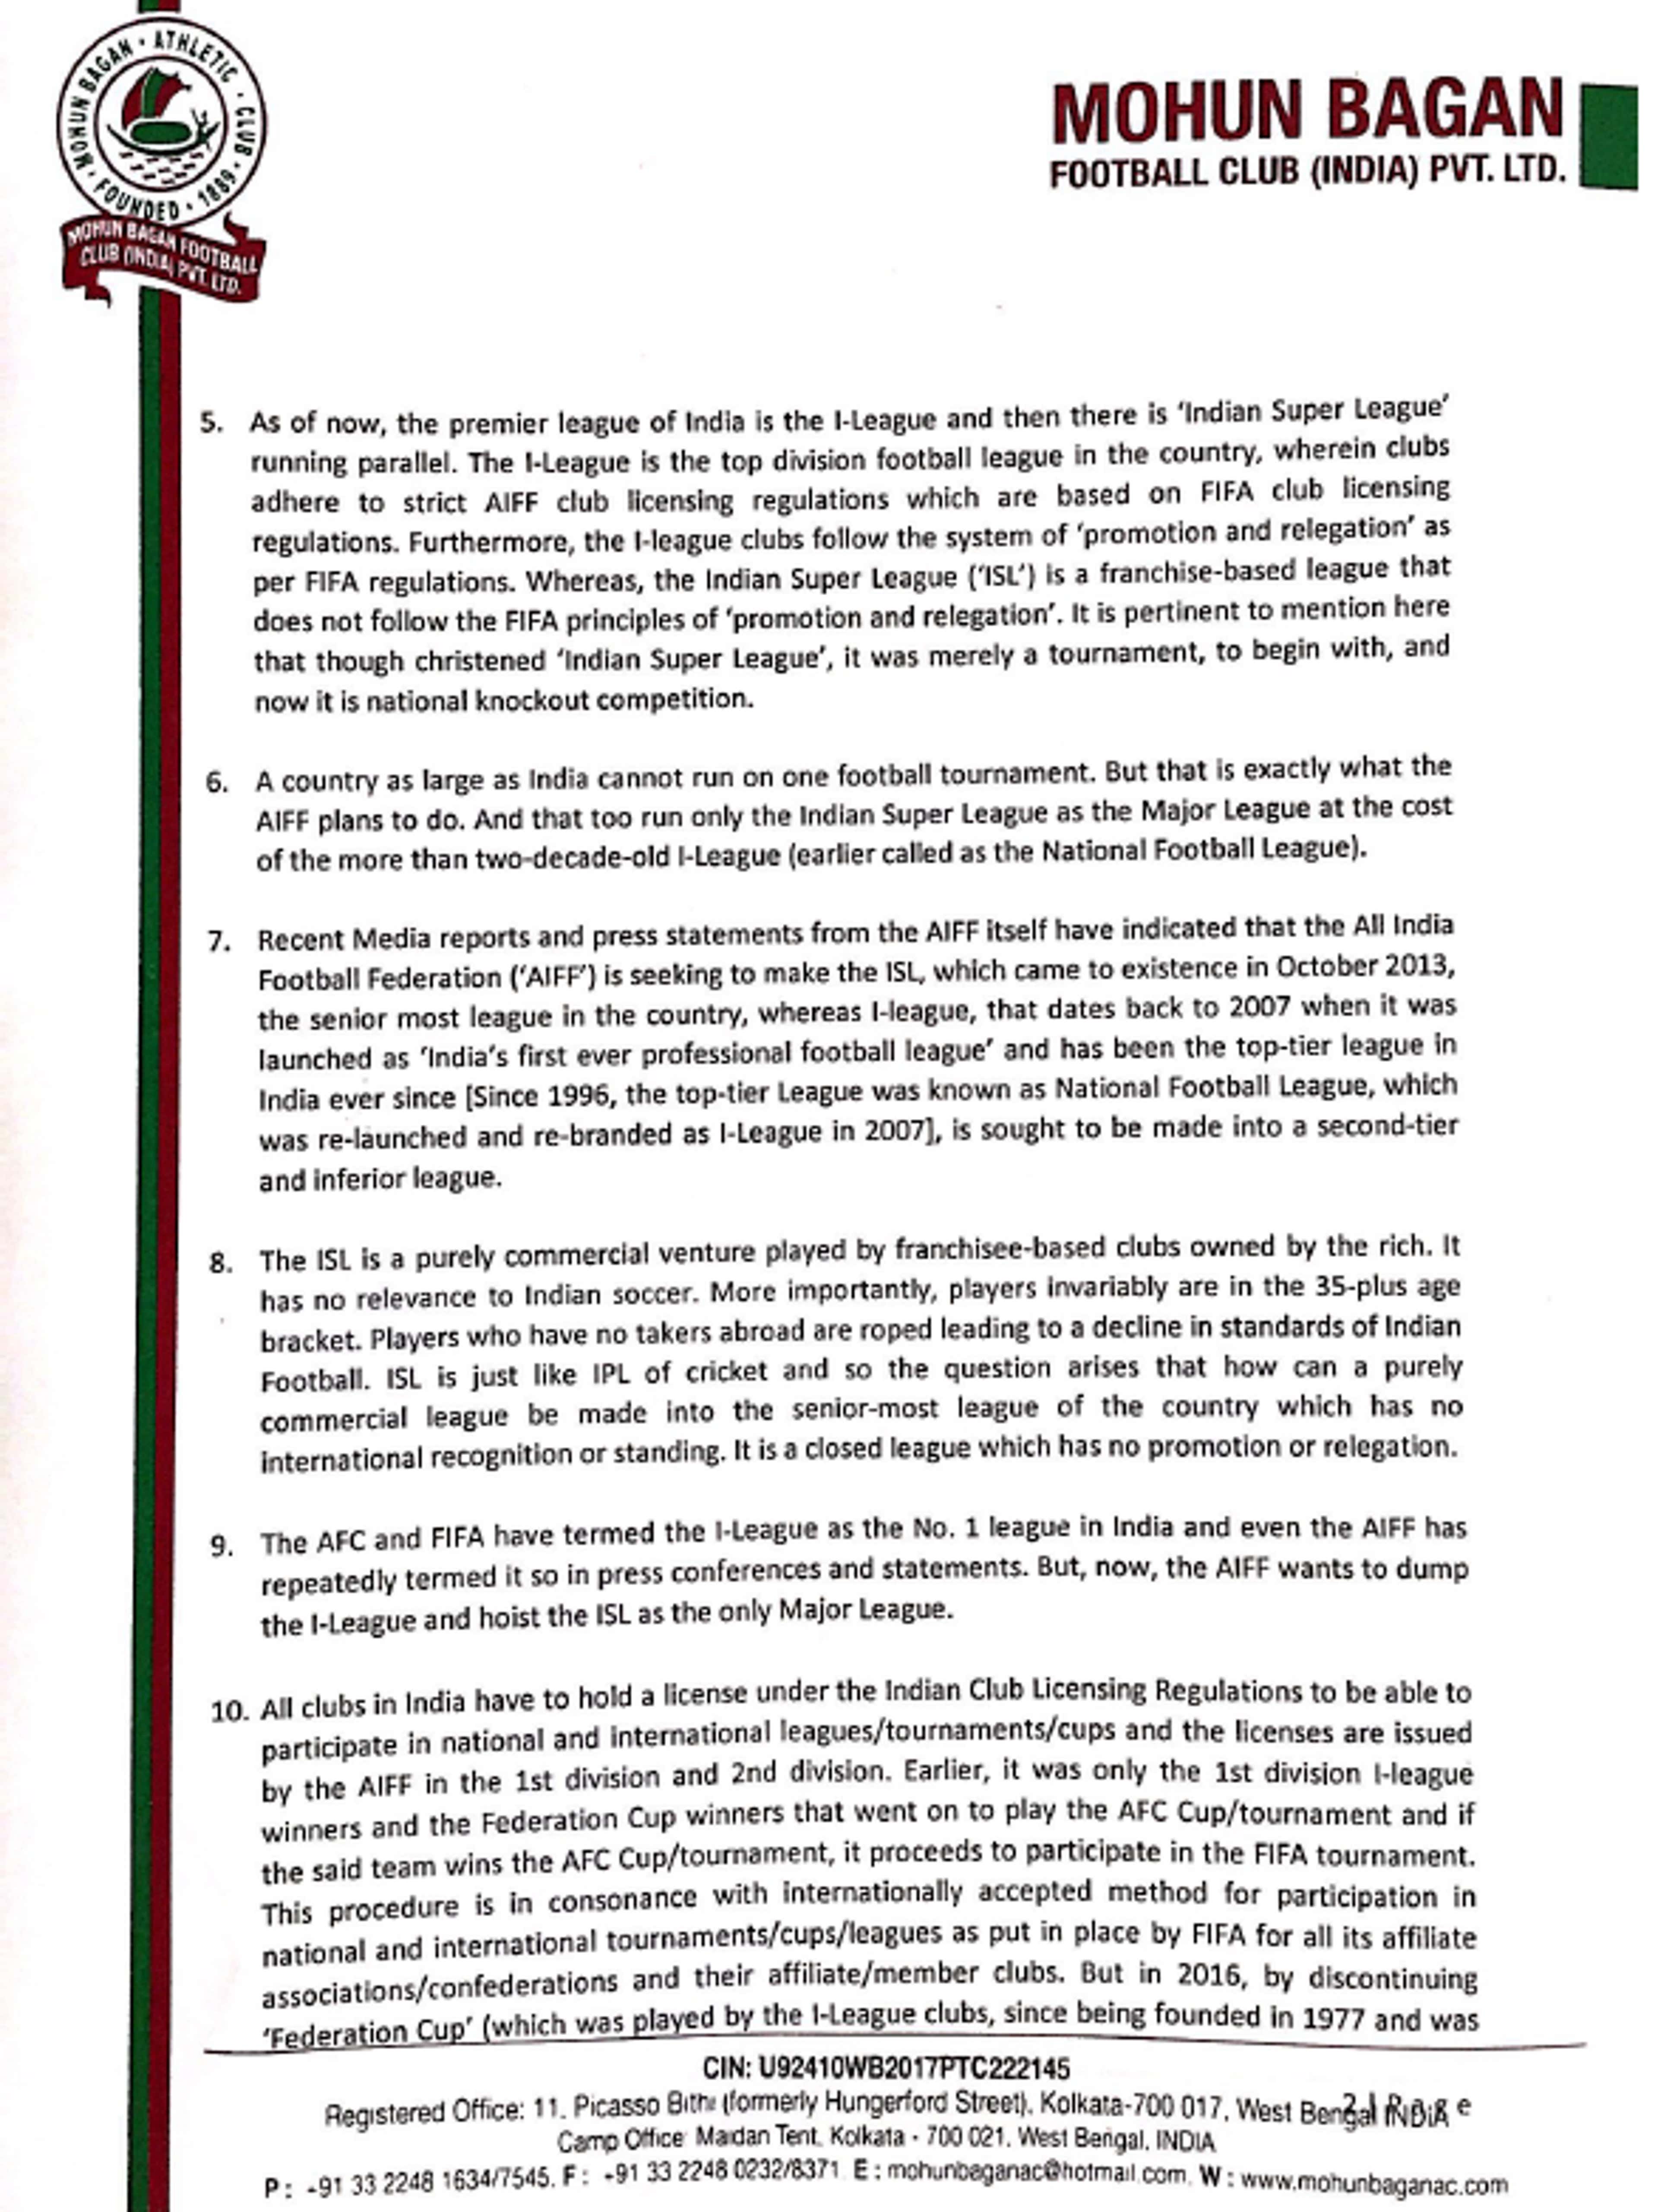 Page 2 - Mohun Bagan letter to PM Modi